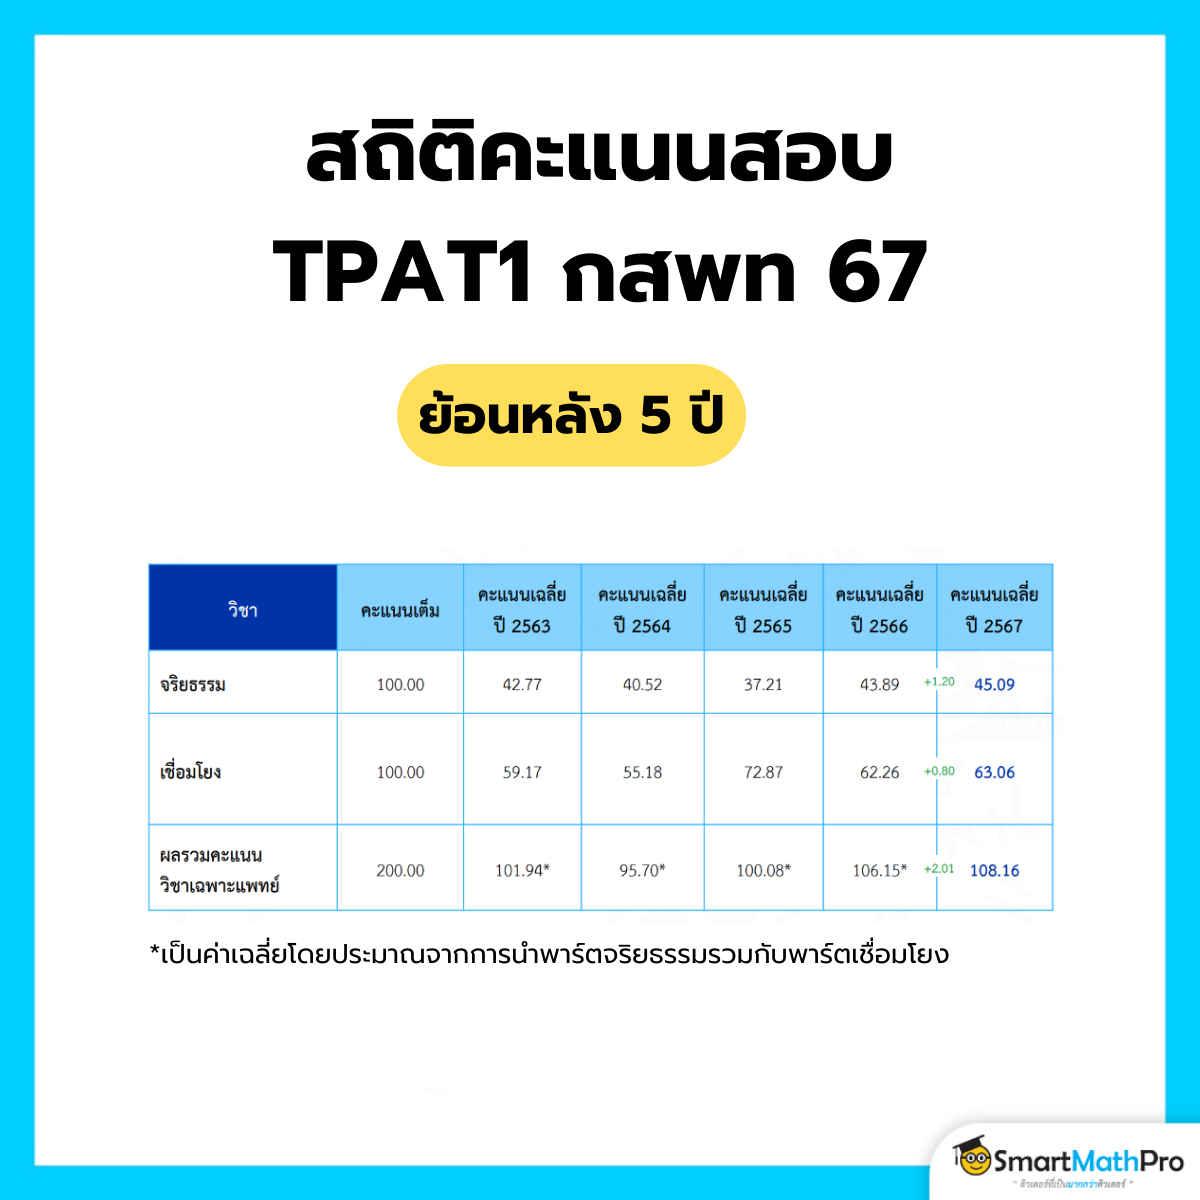 ภาพคะแนน TPAT1 กสพท 67 เทียบกับคะแนนย้อนหลังปี 63-66